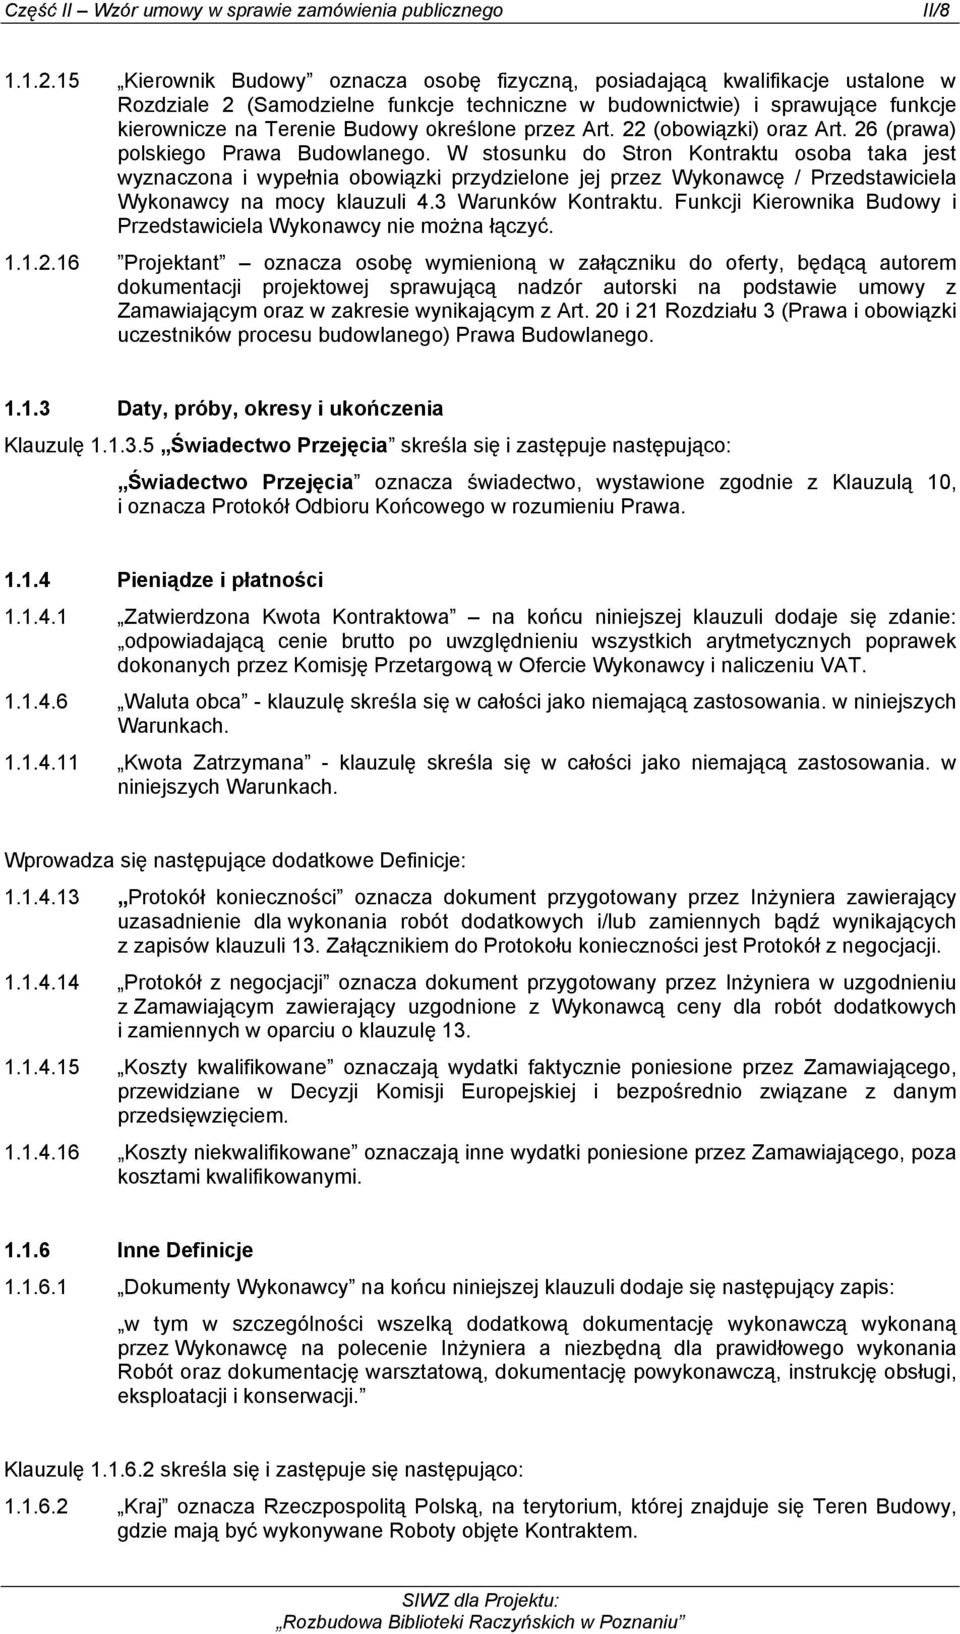 określone przez Art. 22 (obowiązki) oraz Art. 26 (prawa) polskiego Prawa Budowlanego.